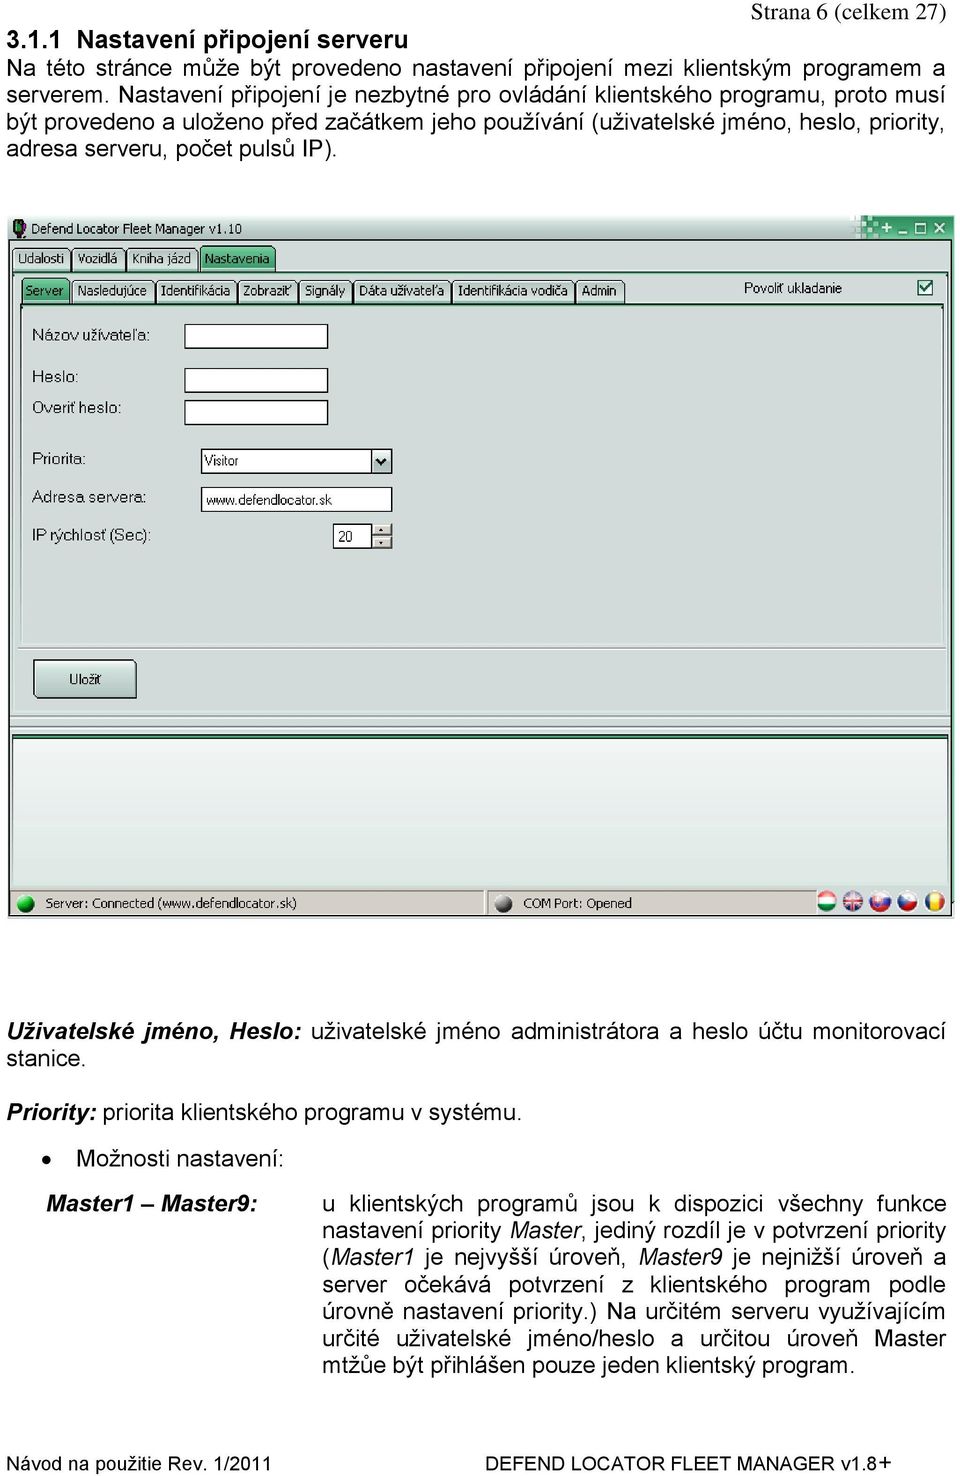 Uživatelské jméno, Heslo: uţivatelské jméno administrátora a heslo účtu monitorovací stanice. Priority: priorita klientského programu v systému.